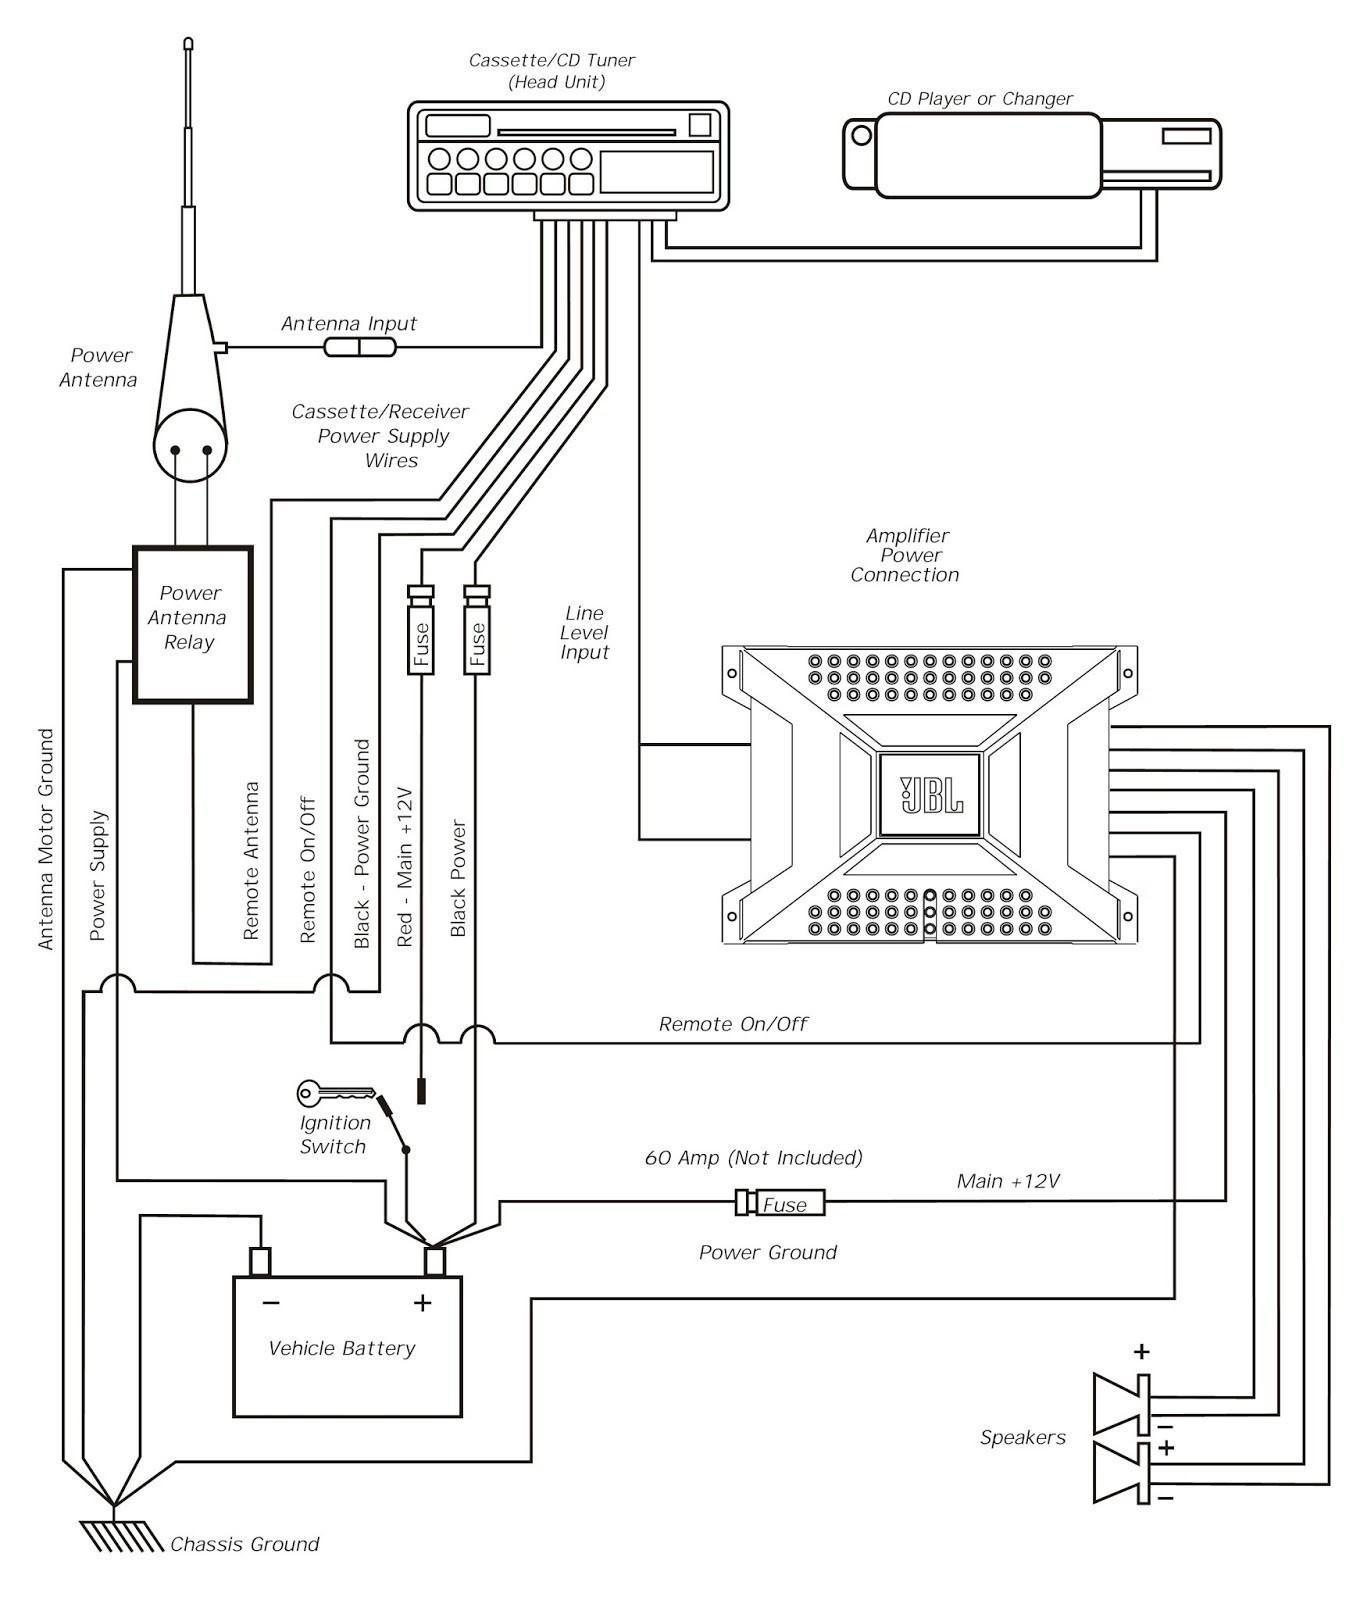 Wiring Diagram 4 Channel Amplifier Best Wiring Diagram for 2 Channel Amplifier Save Amp Wiring Diagram